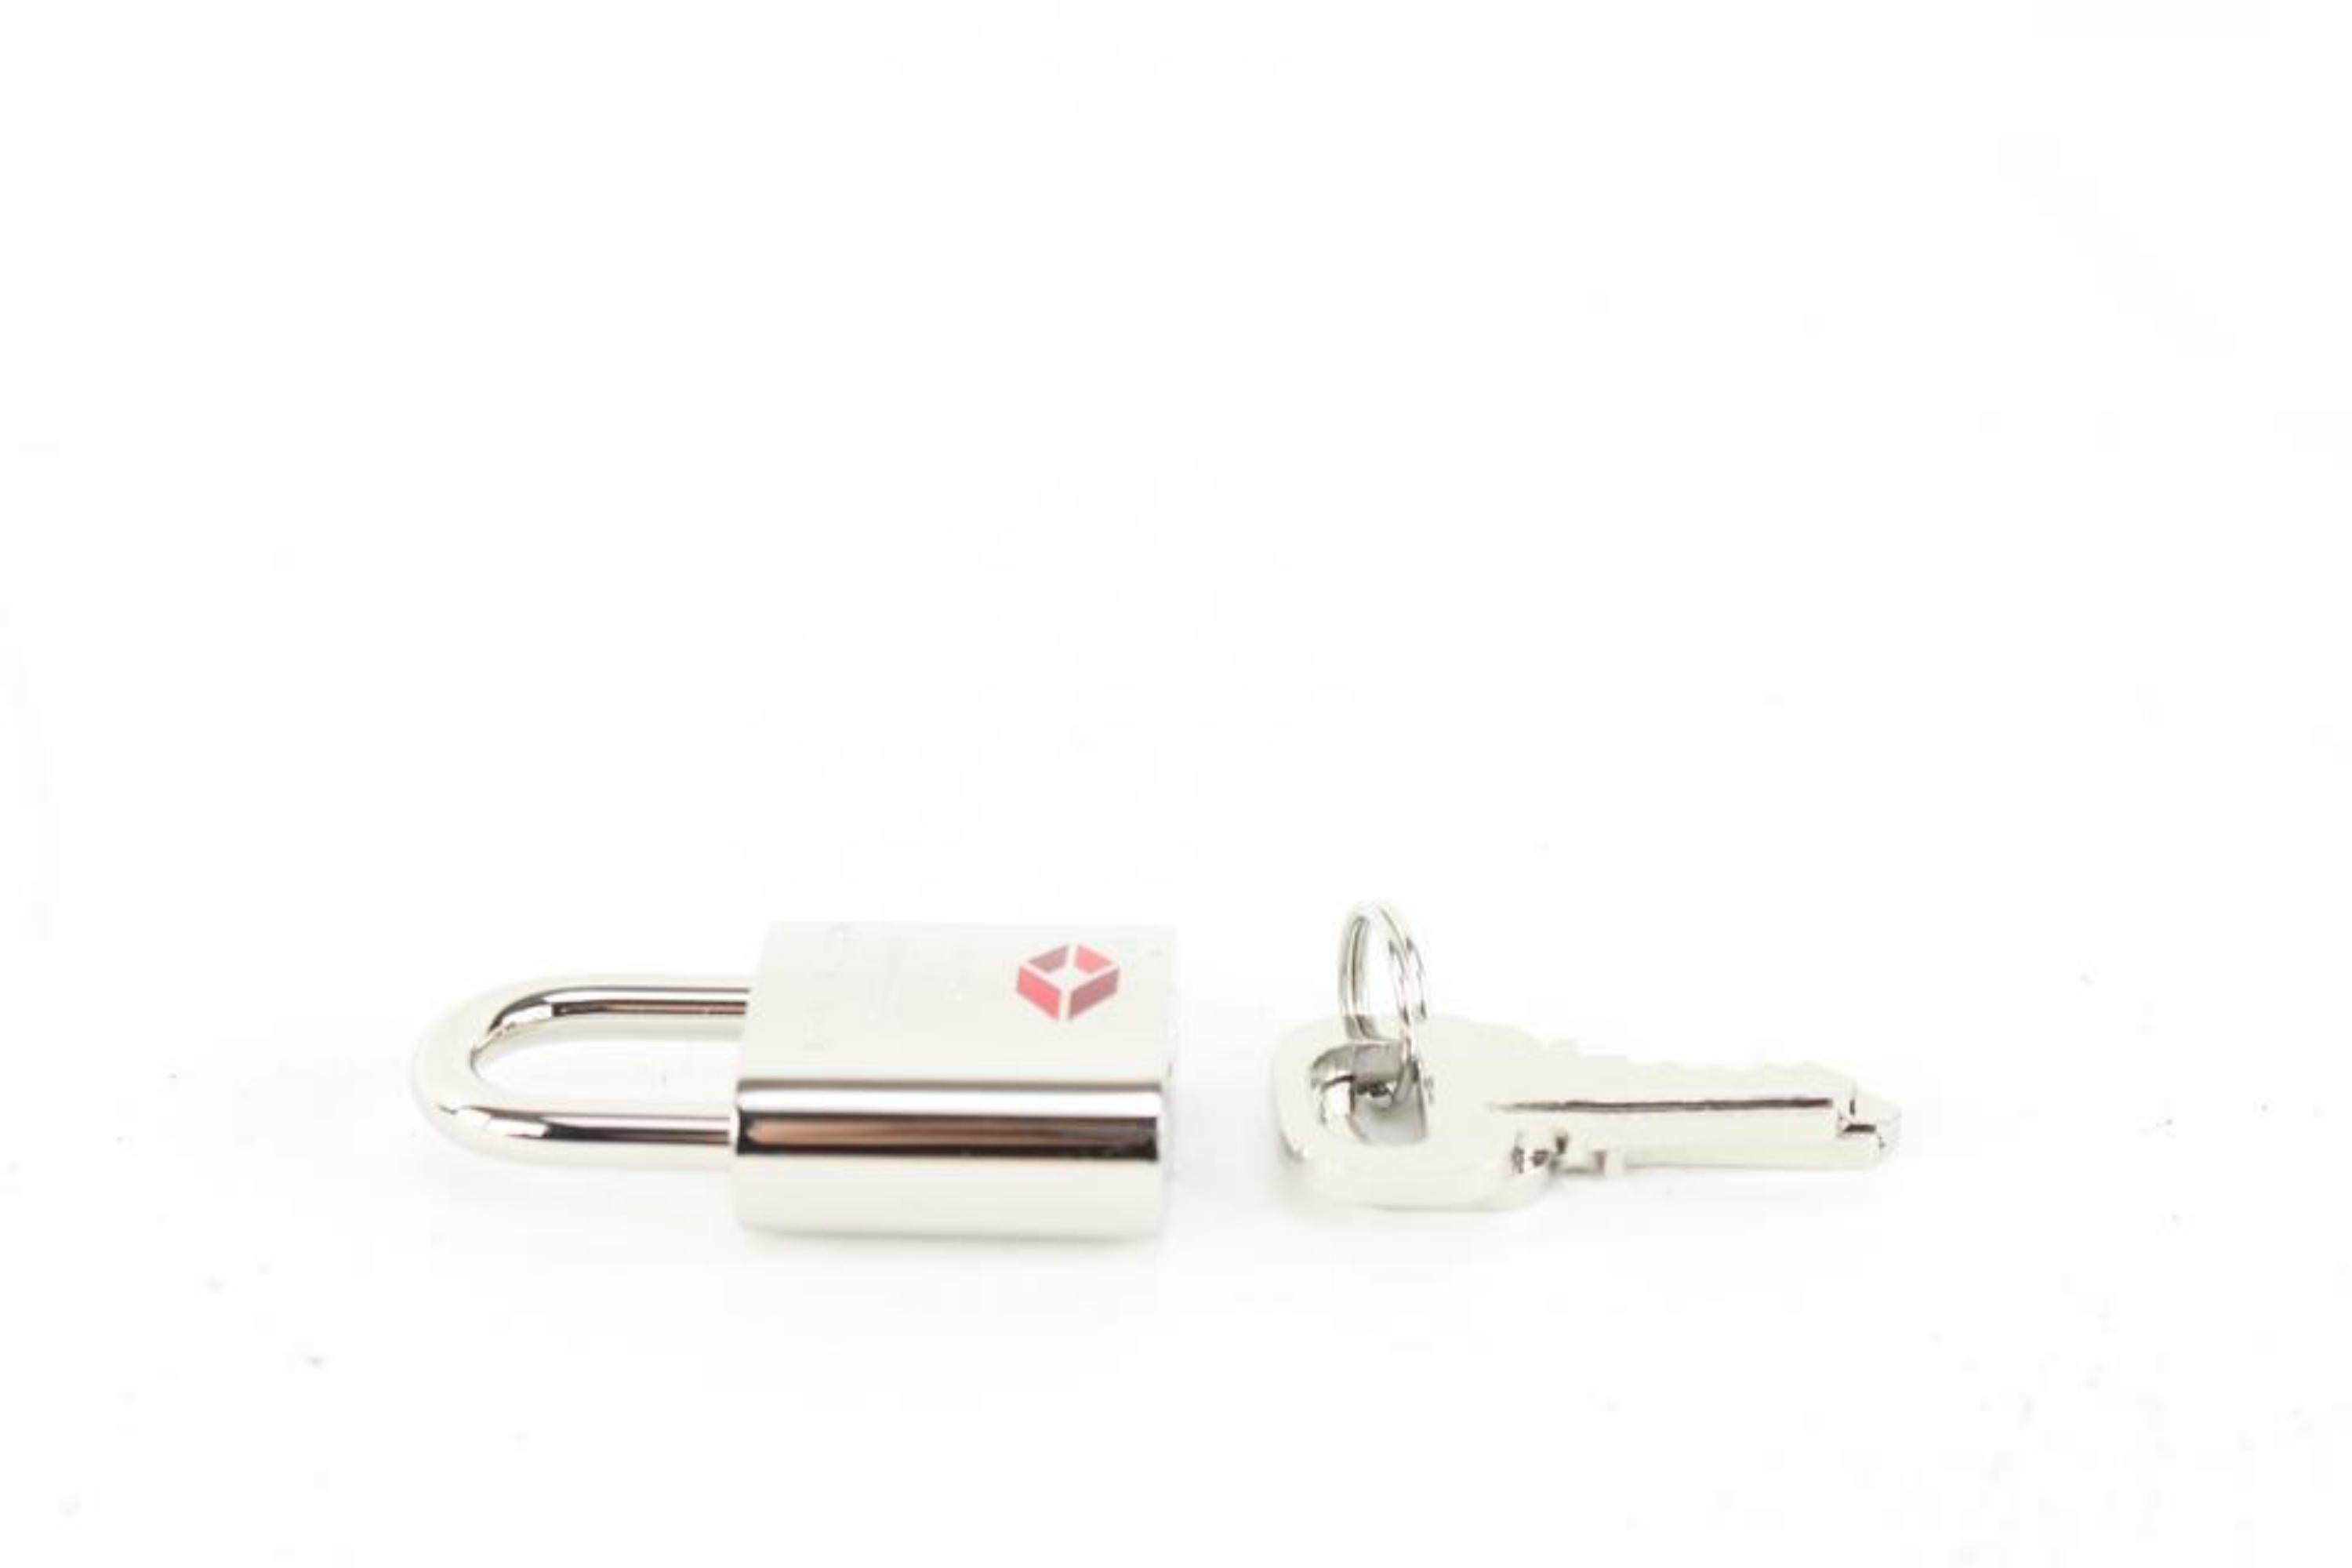 Louis Vuitton TSA De Voyage Padlock Silver and 2 Key Set Lock 57lk63s For Sale 3